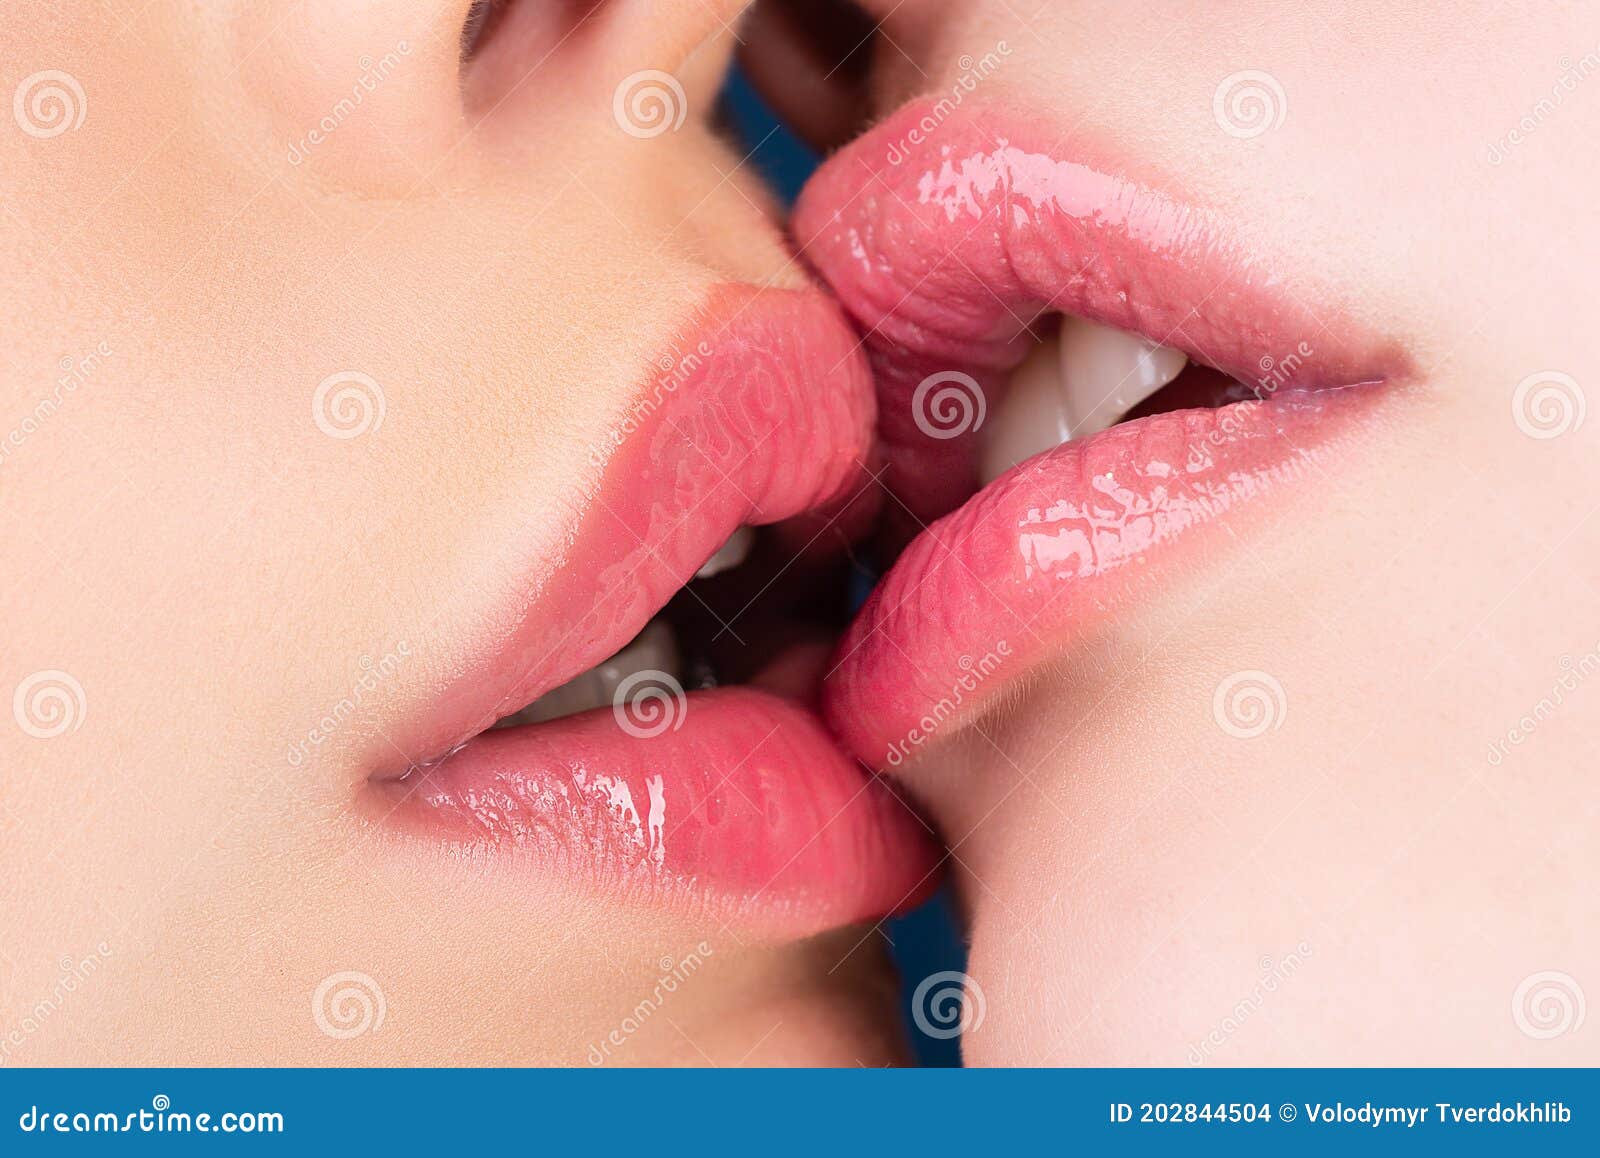 лесби целуются в губы фото 68